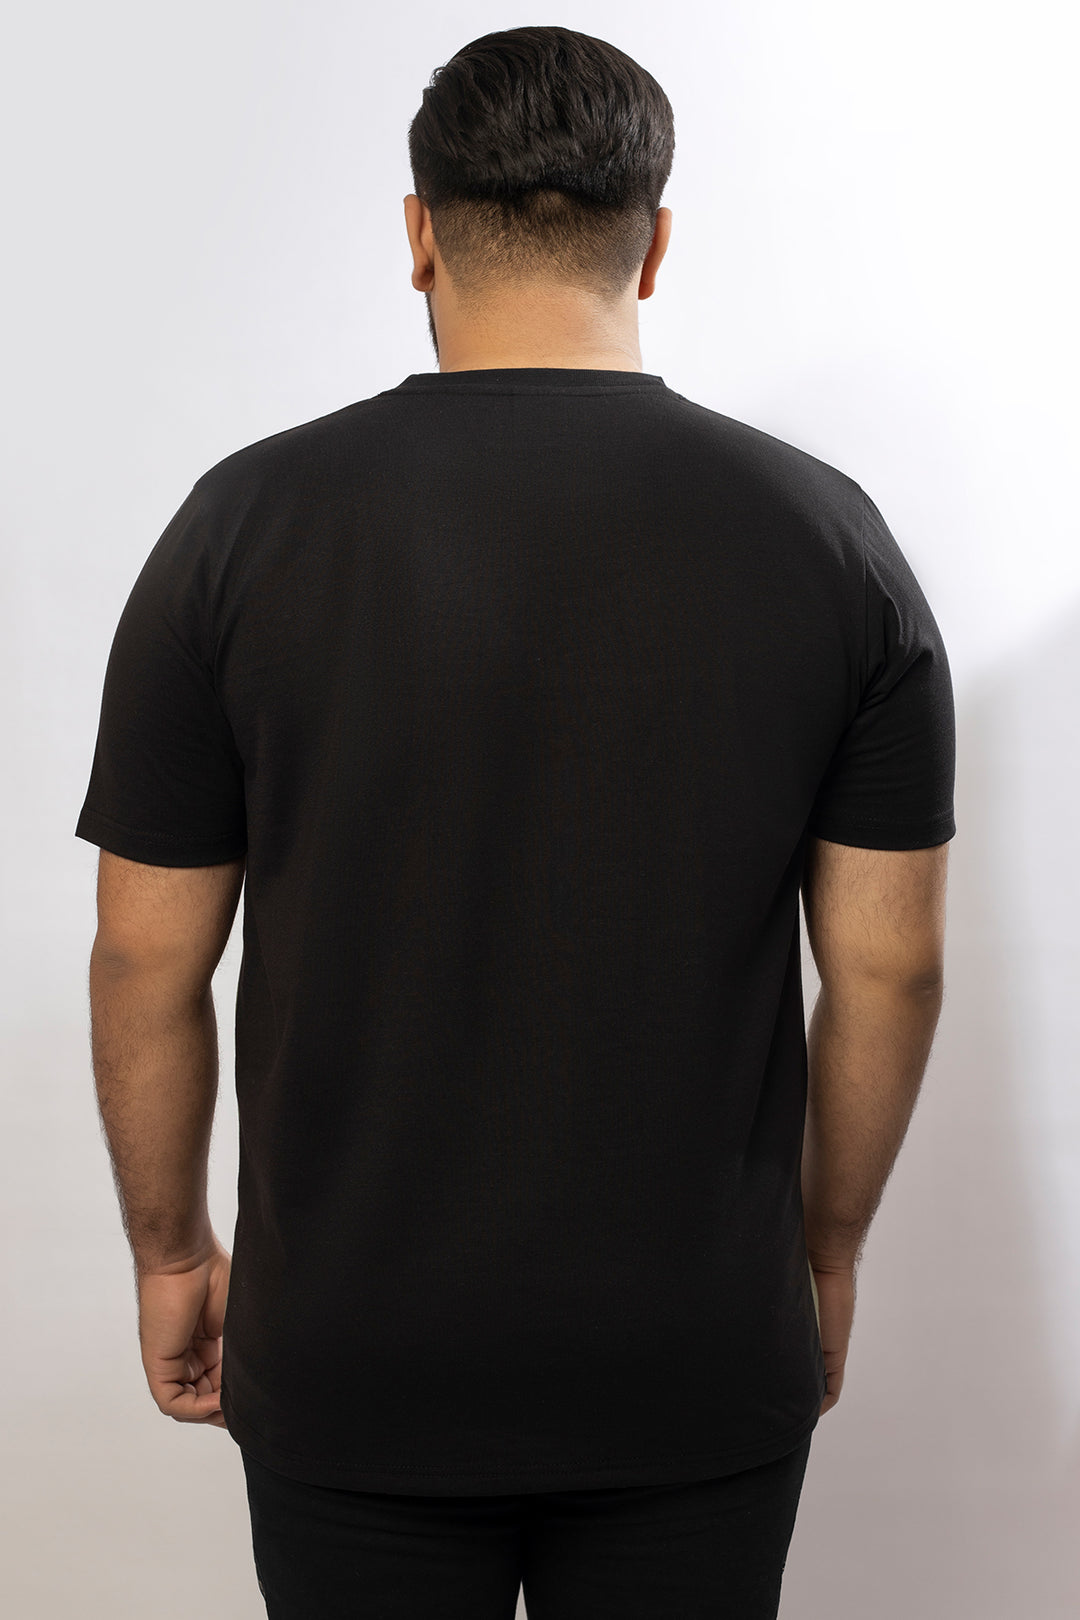 Black Tri-Color Graphic Printed T-Shirt (Plus Size) - A24 - MT0321P